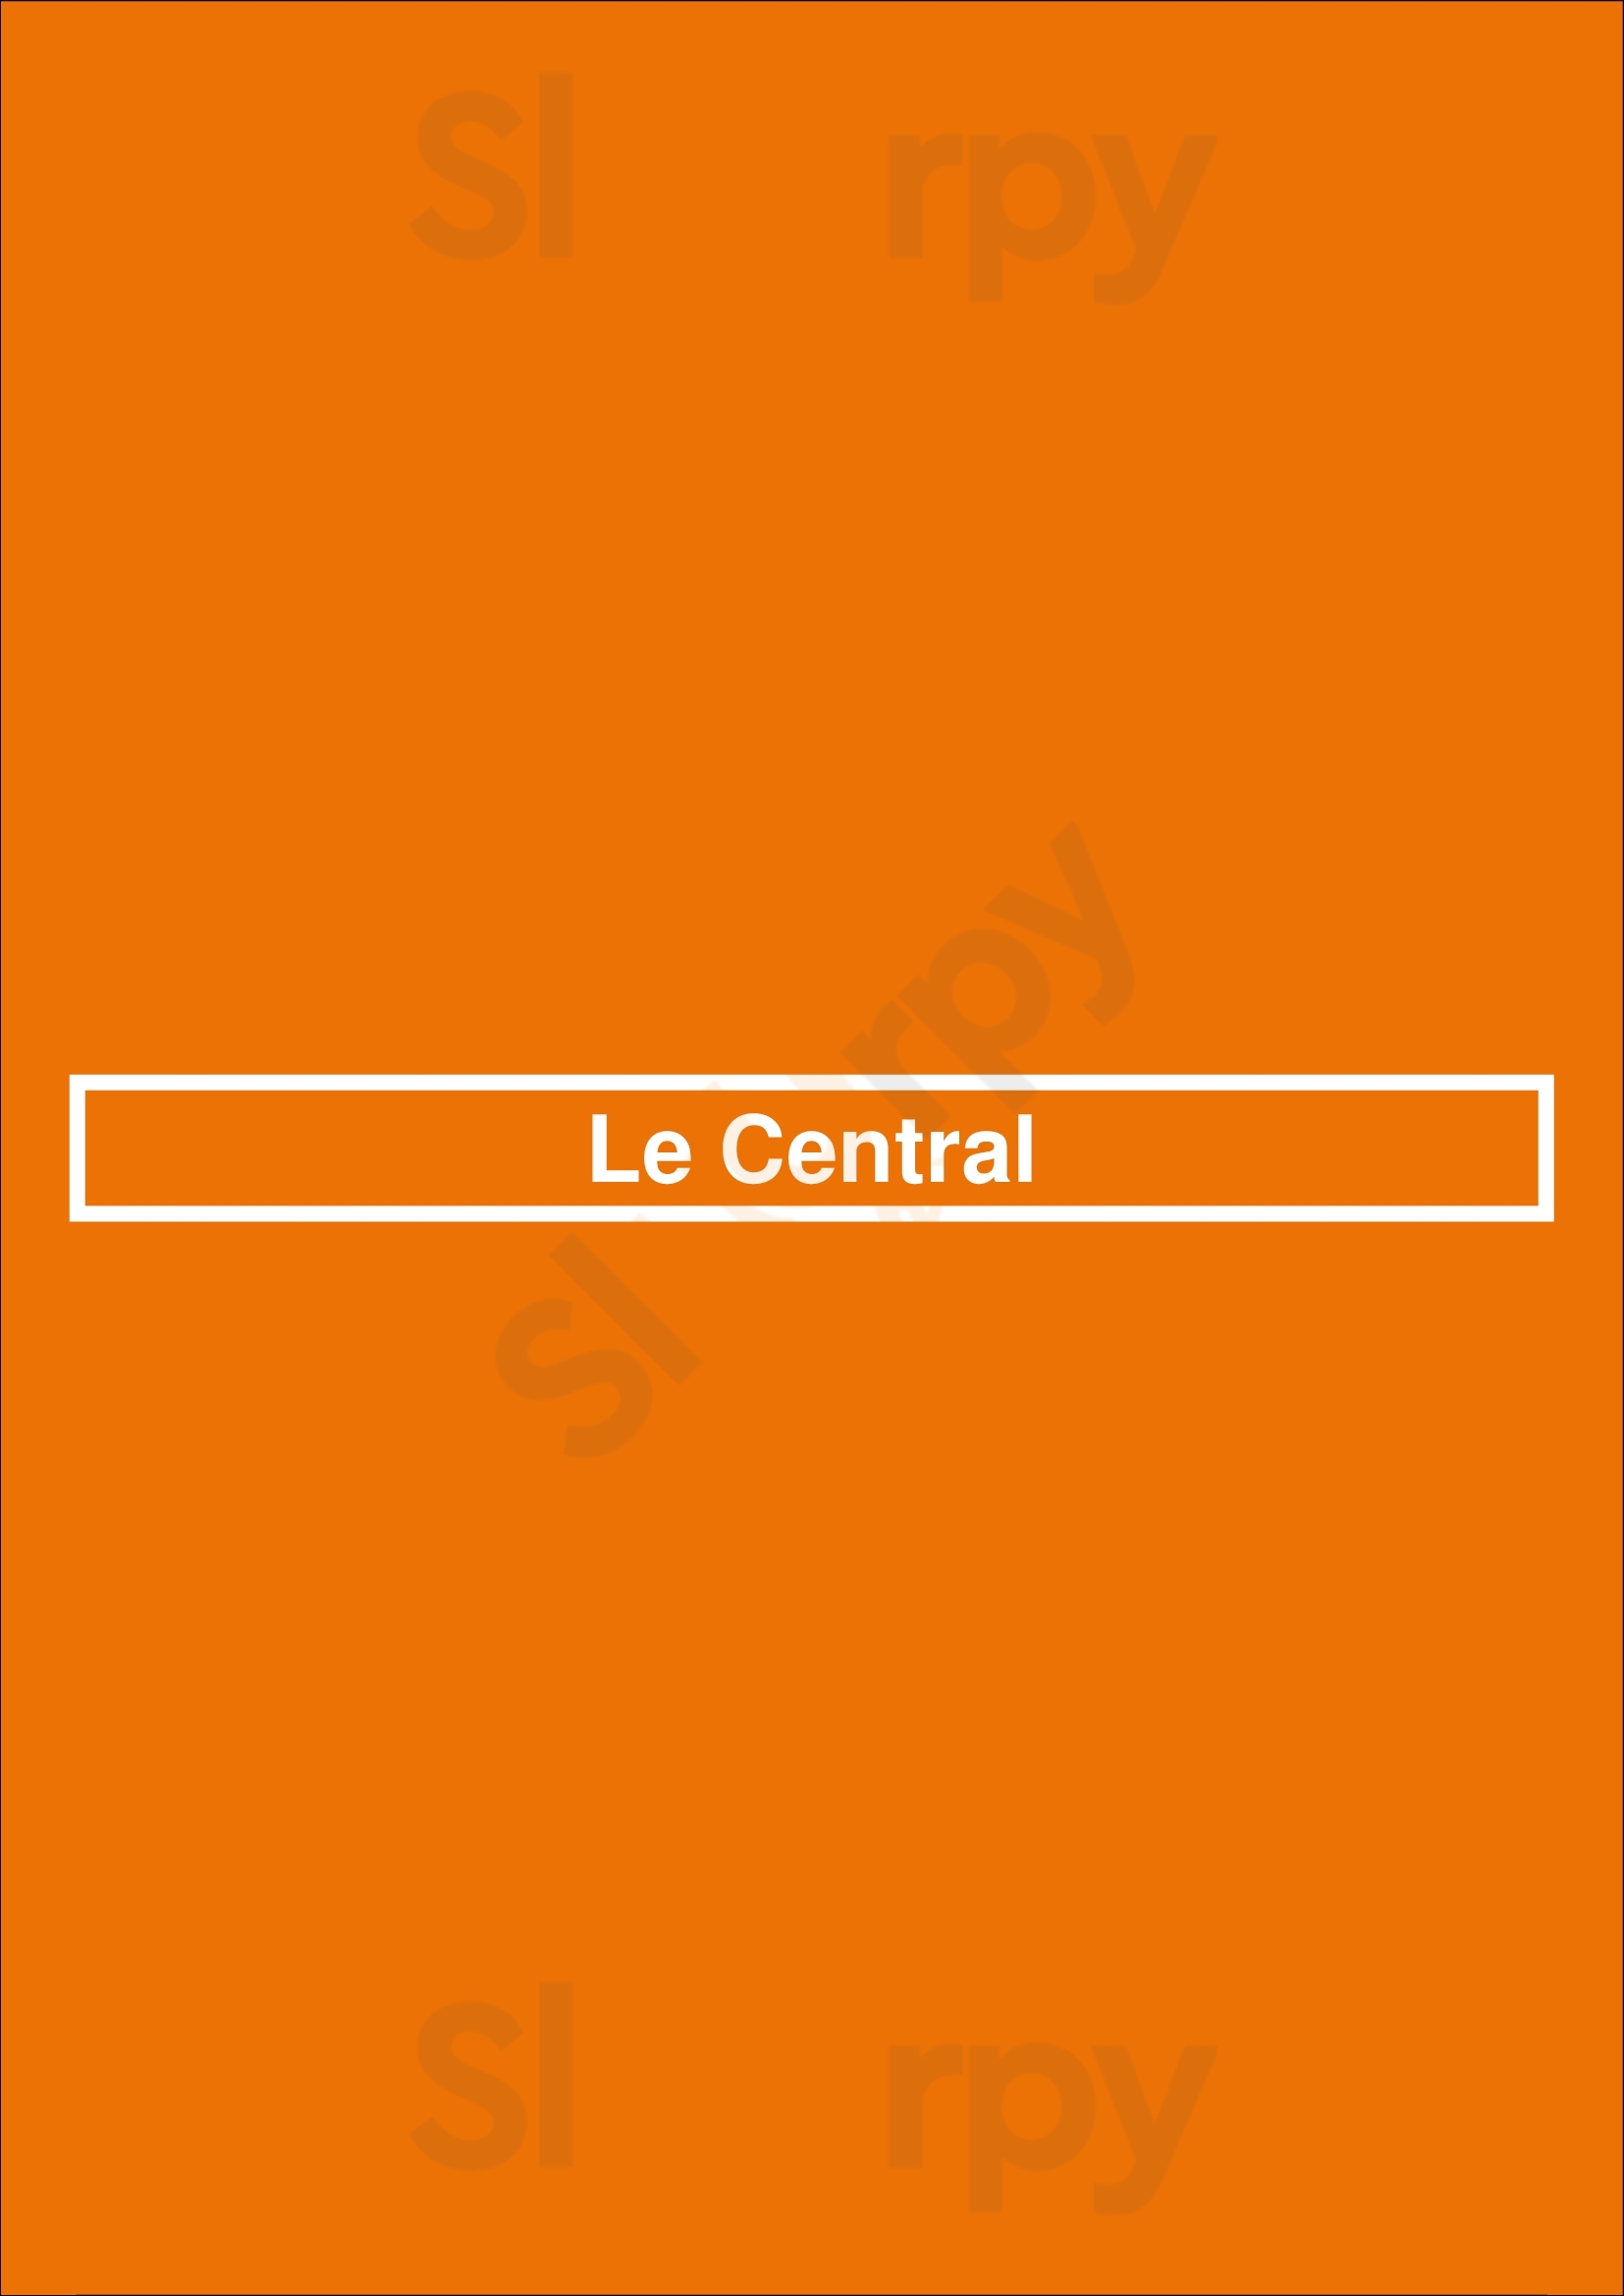 Le Central Jette Menu - 1